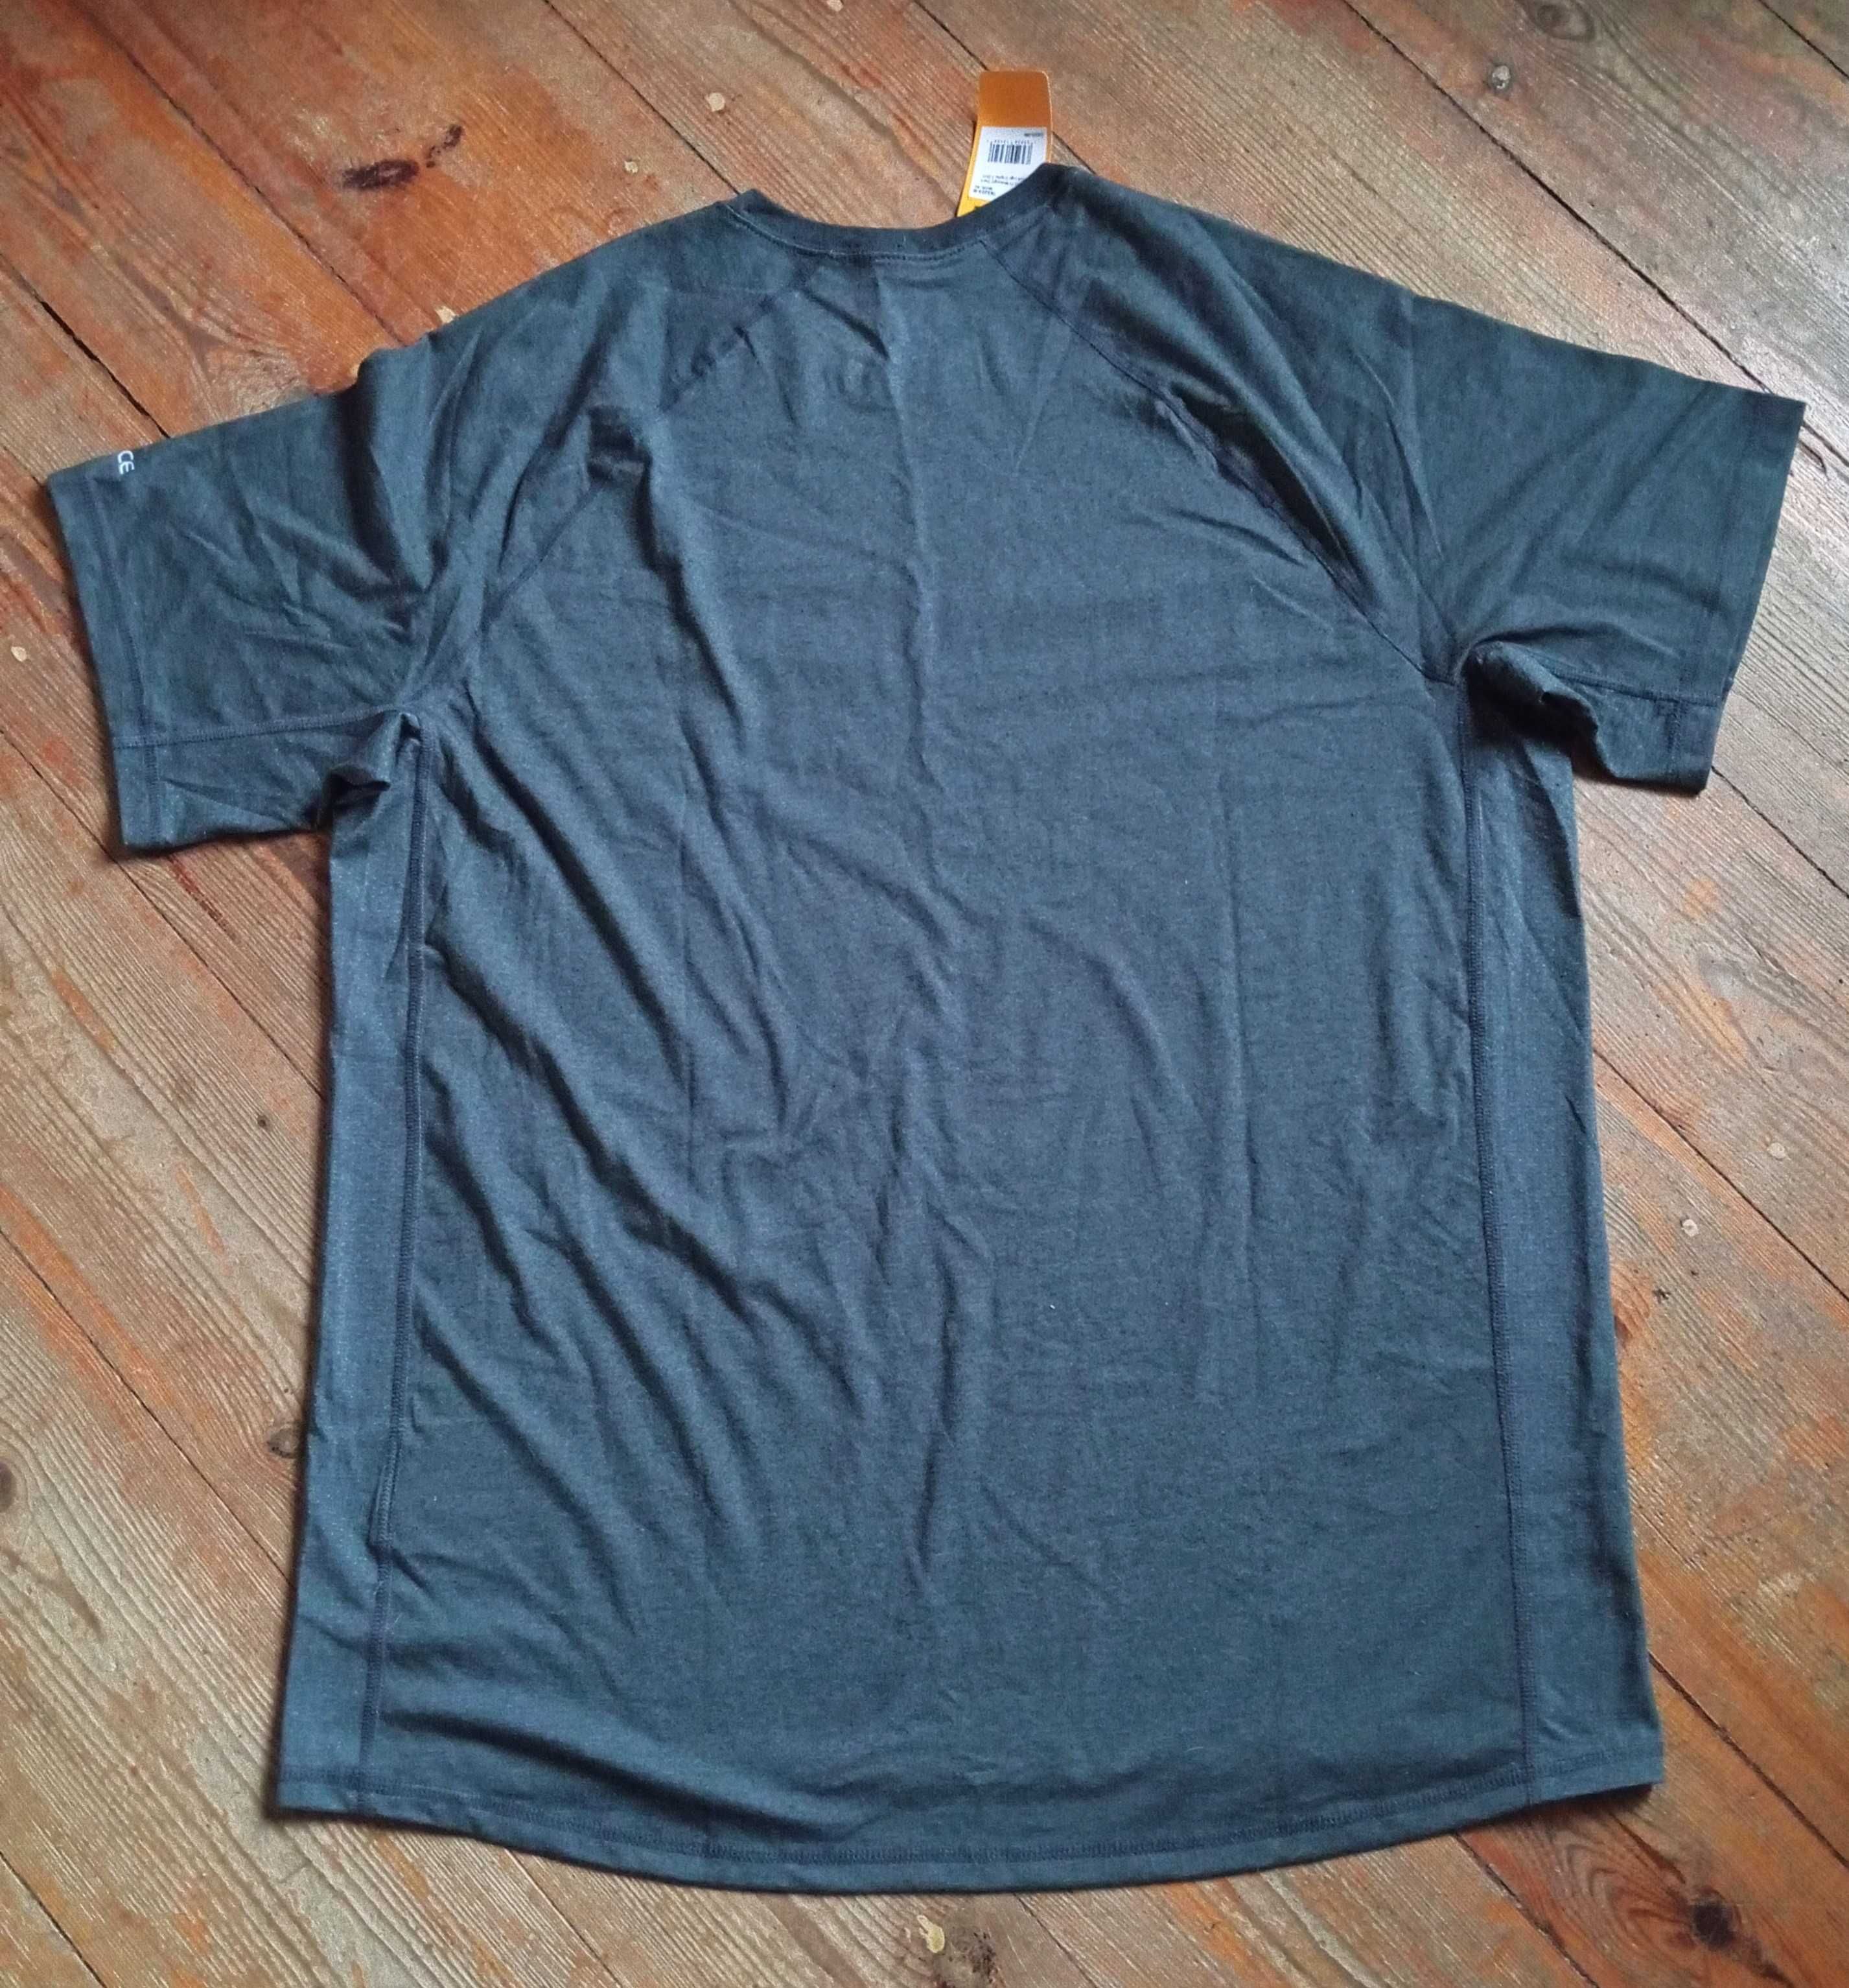 Carhartt męska koszulka / t-shirt, szary, rozm. XL, NOWA